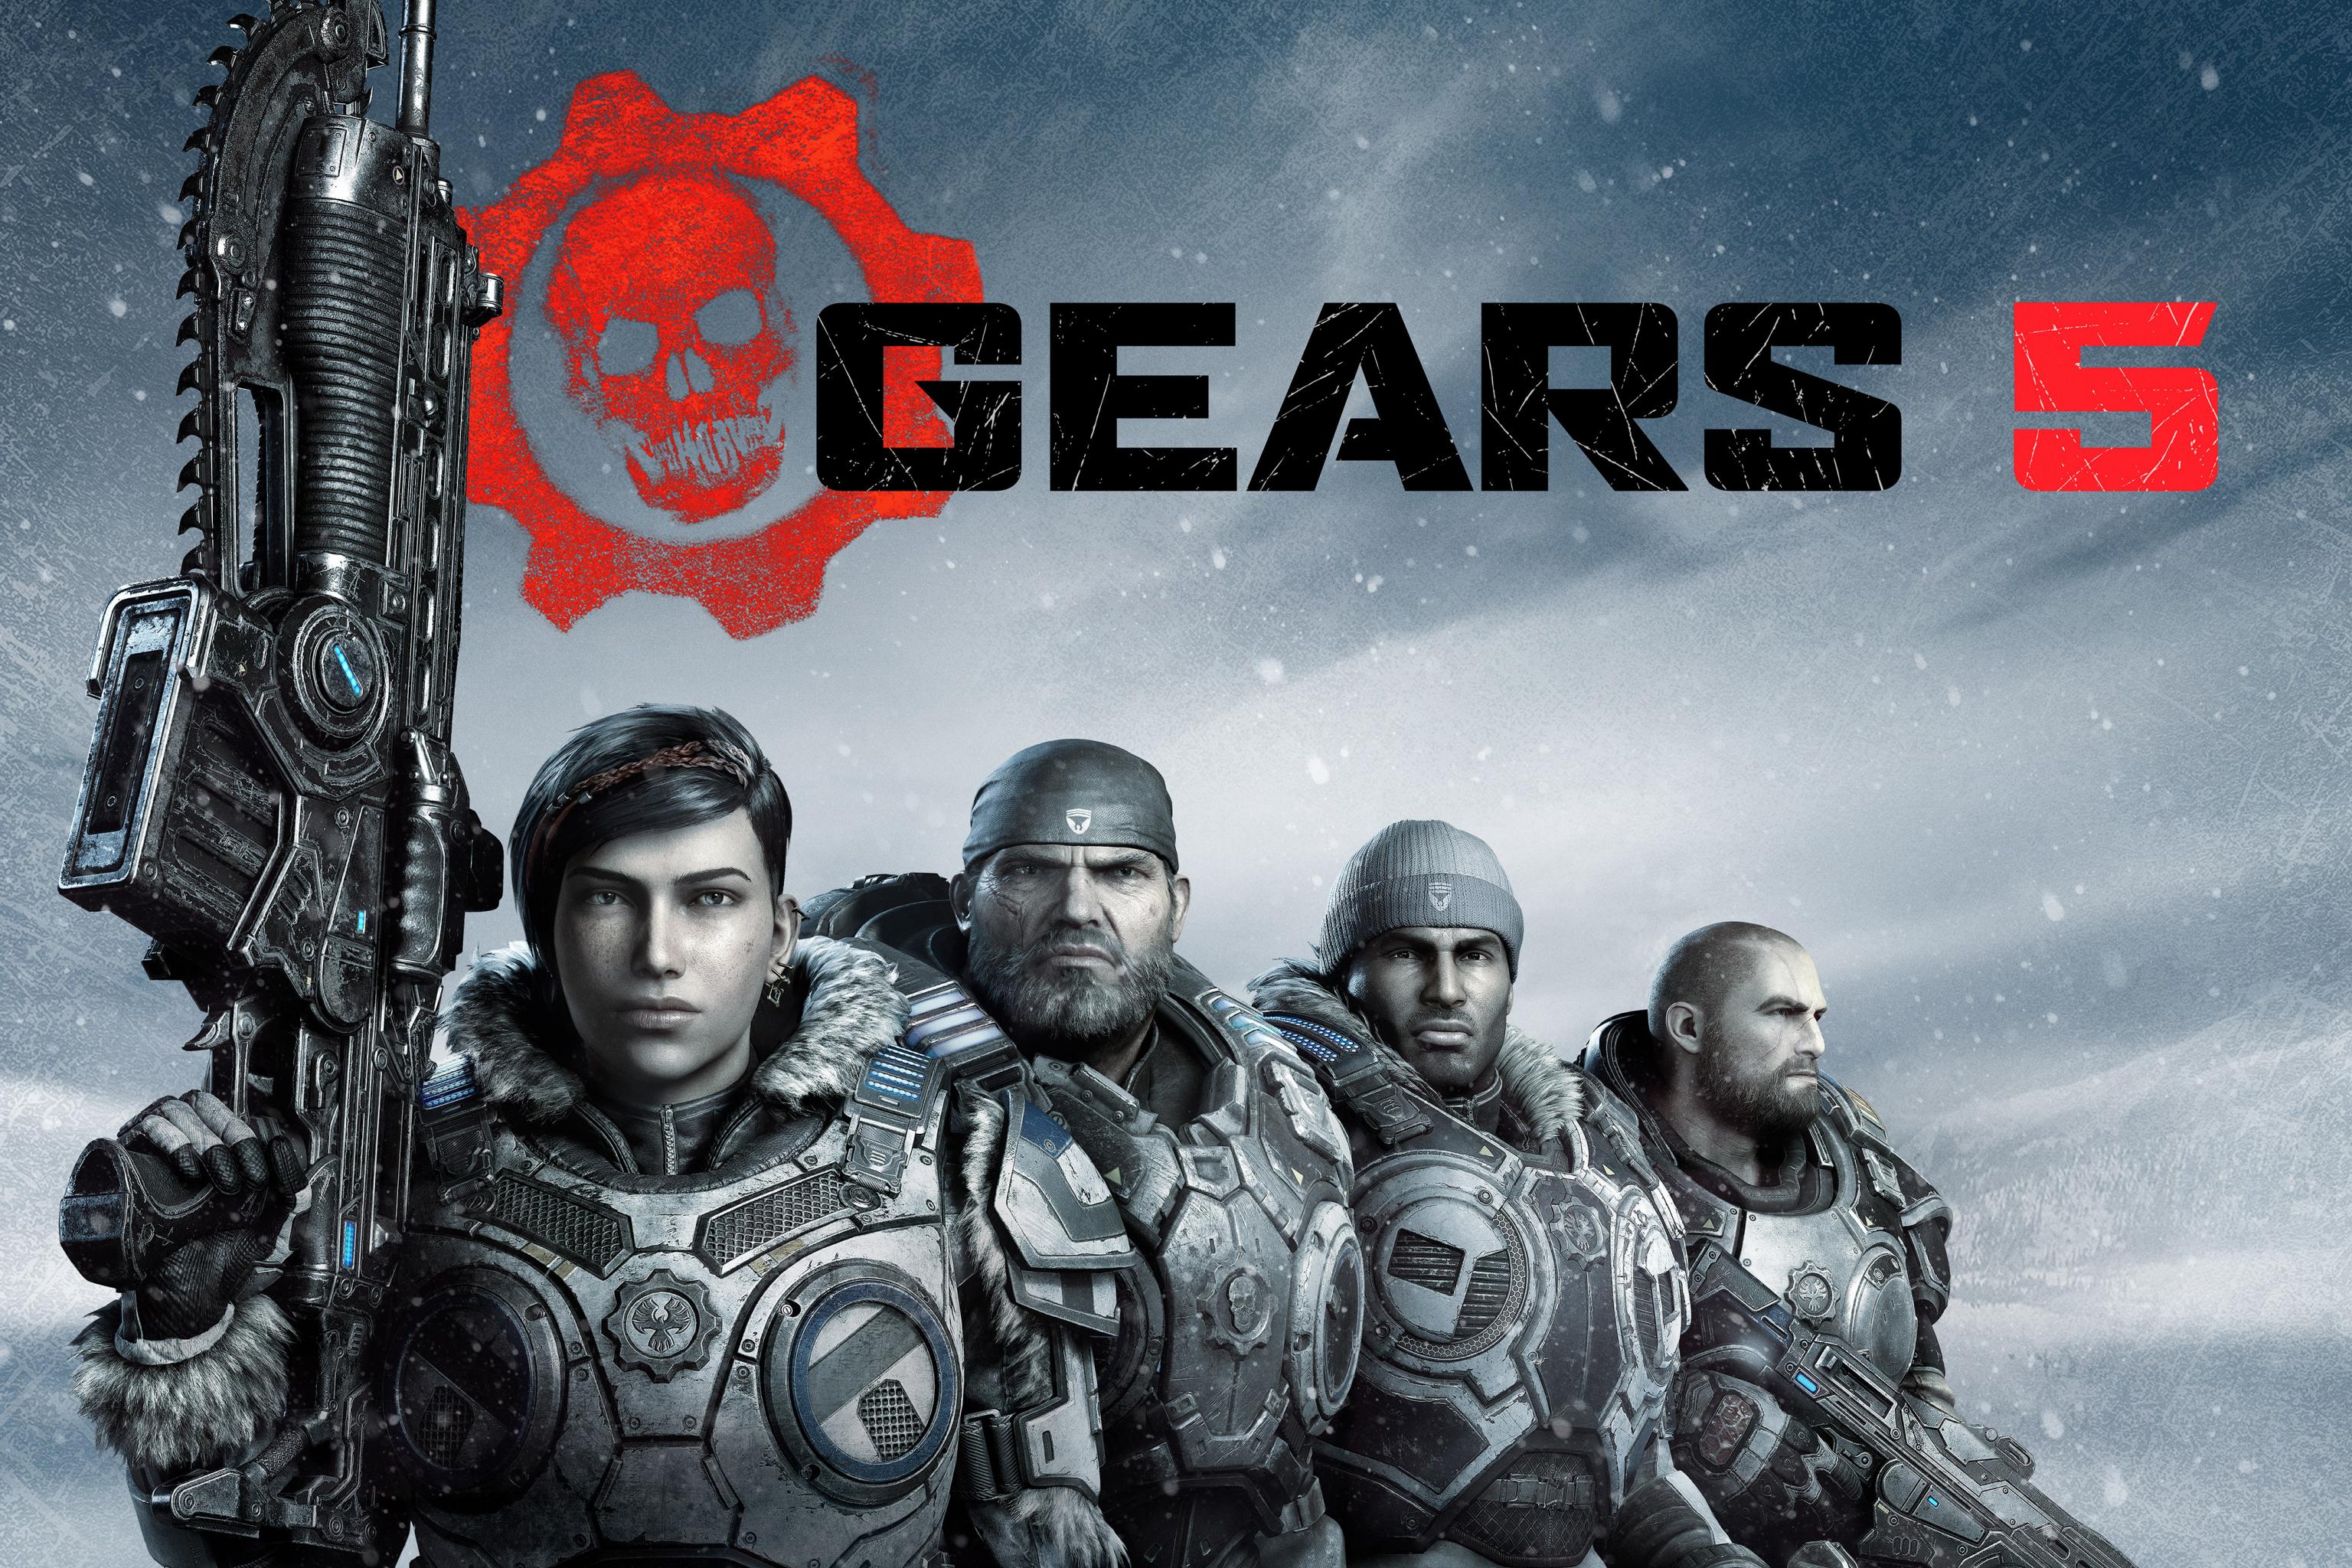 Gears 5 Horde Mode gameplay demos new Ultimate abilities